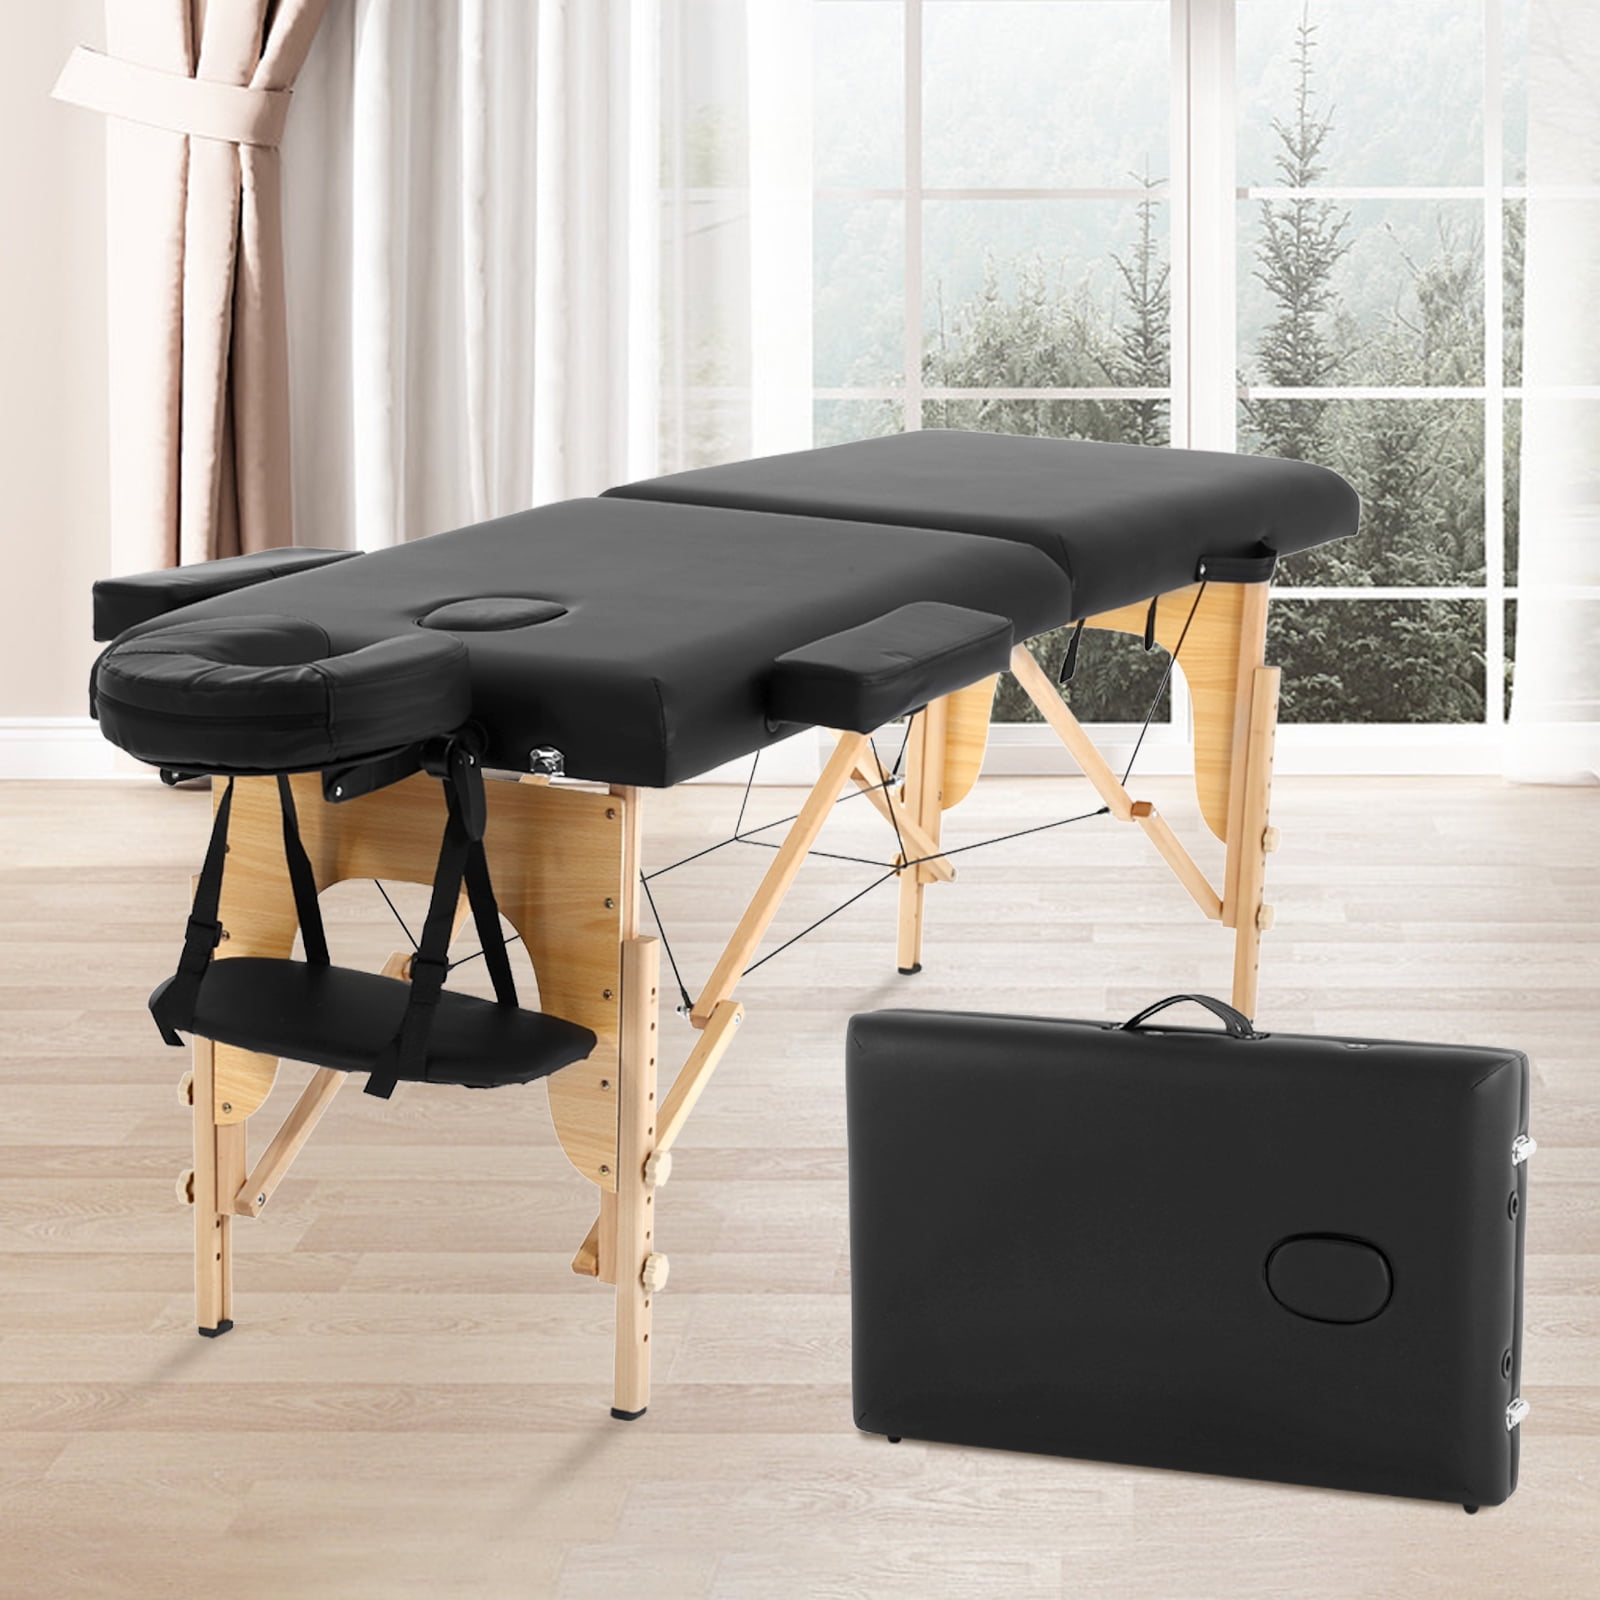 Professional Portable Spa Tables Massage Bed Carrying Bag Shoulder Bag